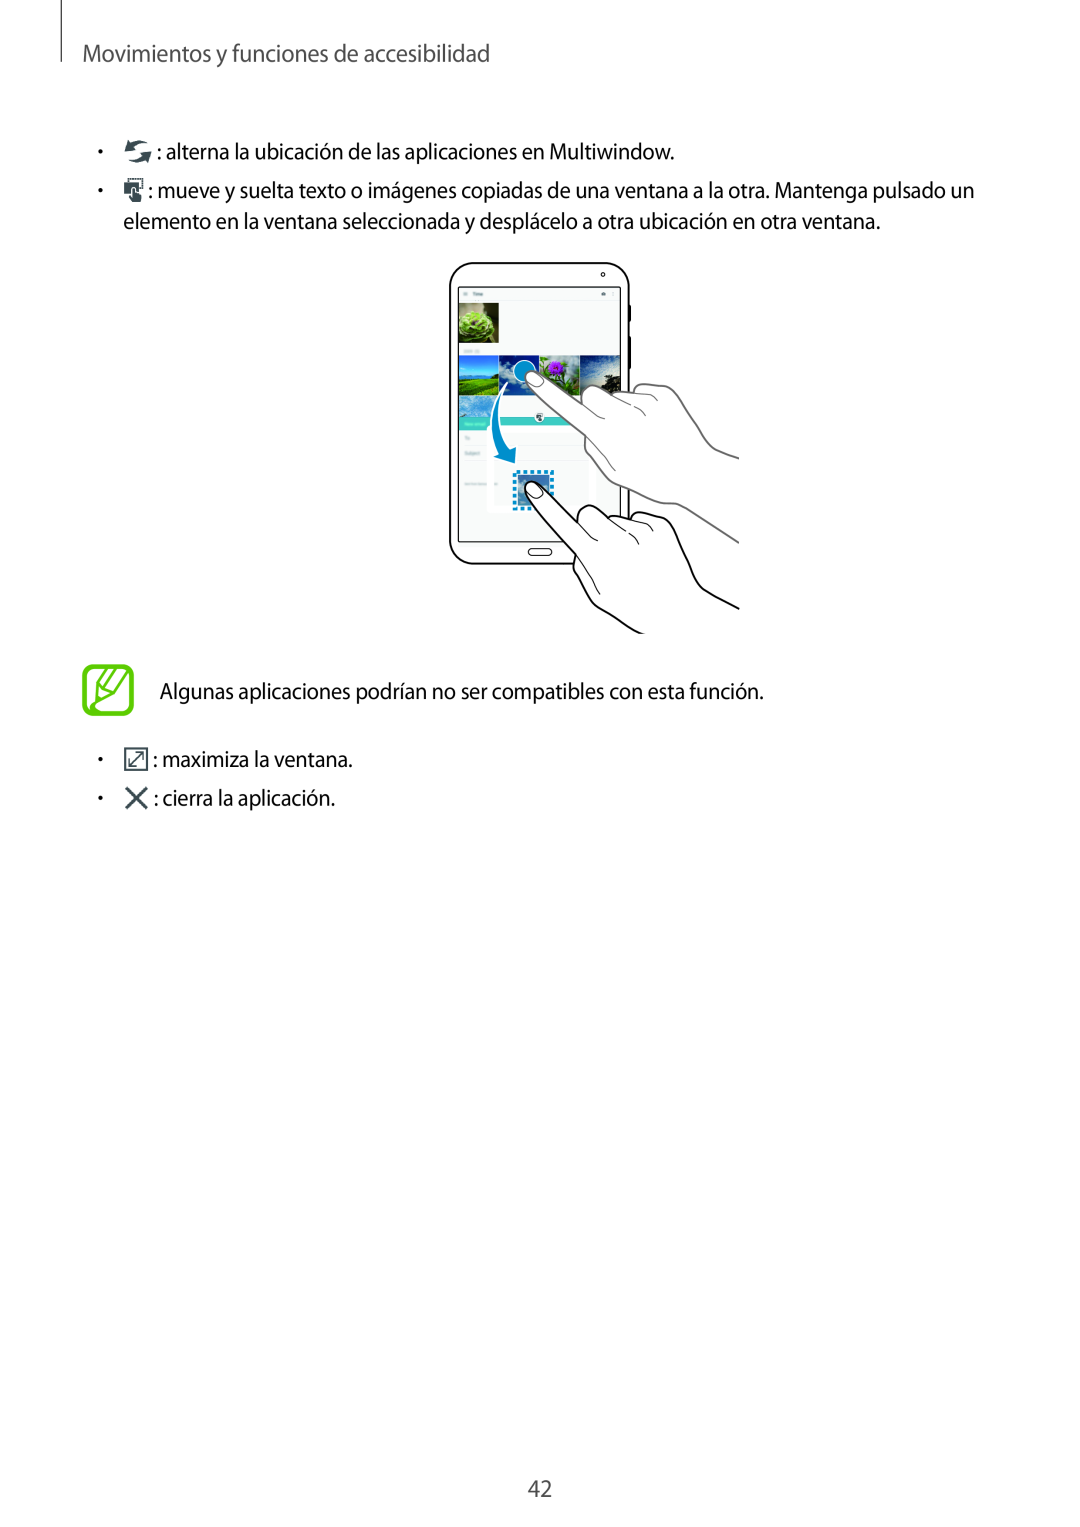 Samsung SM-T700NZWATPH Movimientos y funciones de accesibilidad, alterna la ubicación de las aplicaciones en Multiwindow 